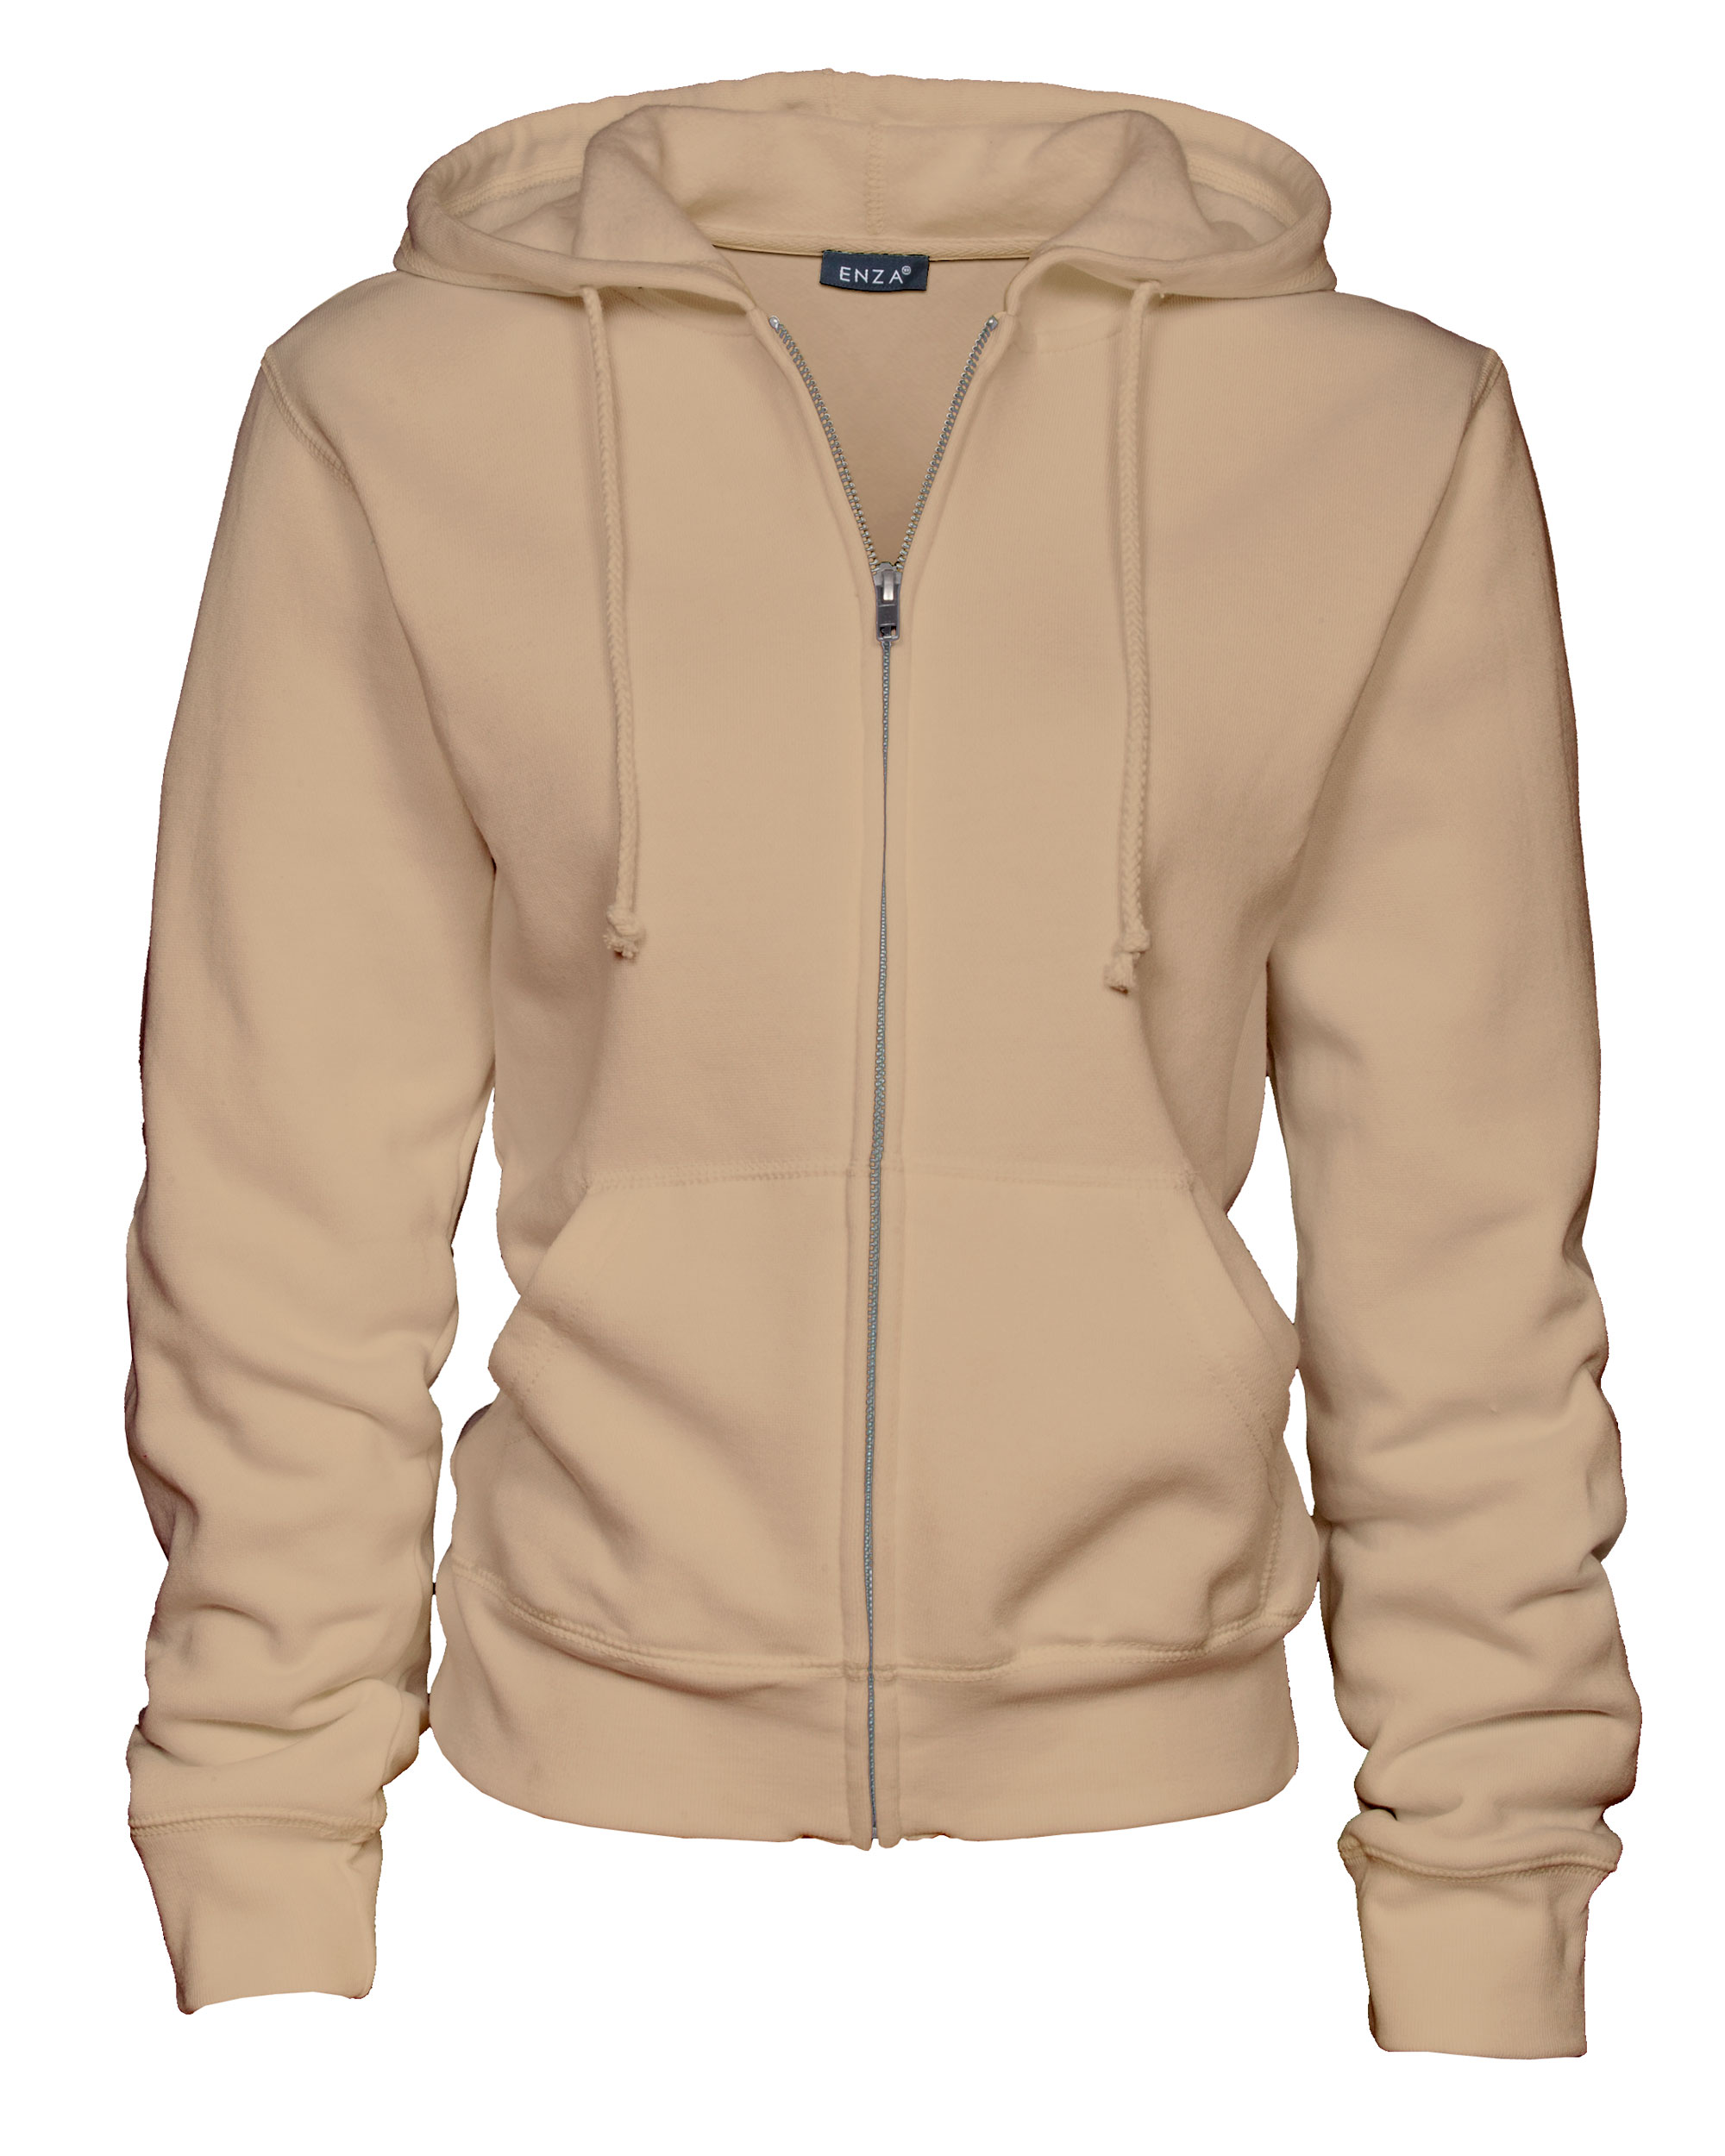 Enza® 34079 Ladies Classic Fleece Full Zip Hood